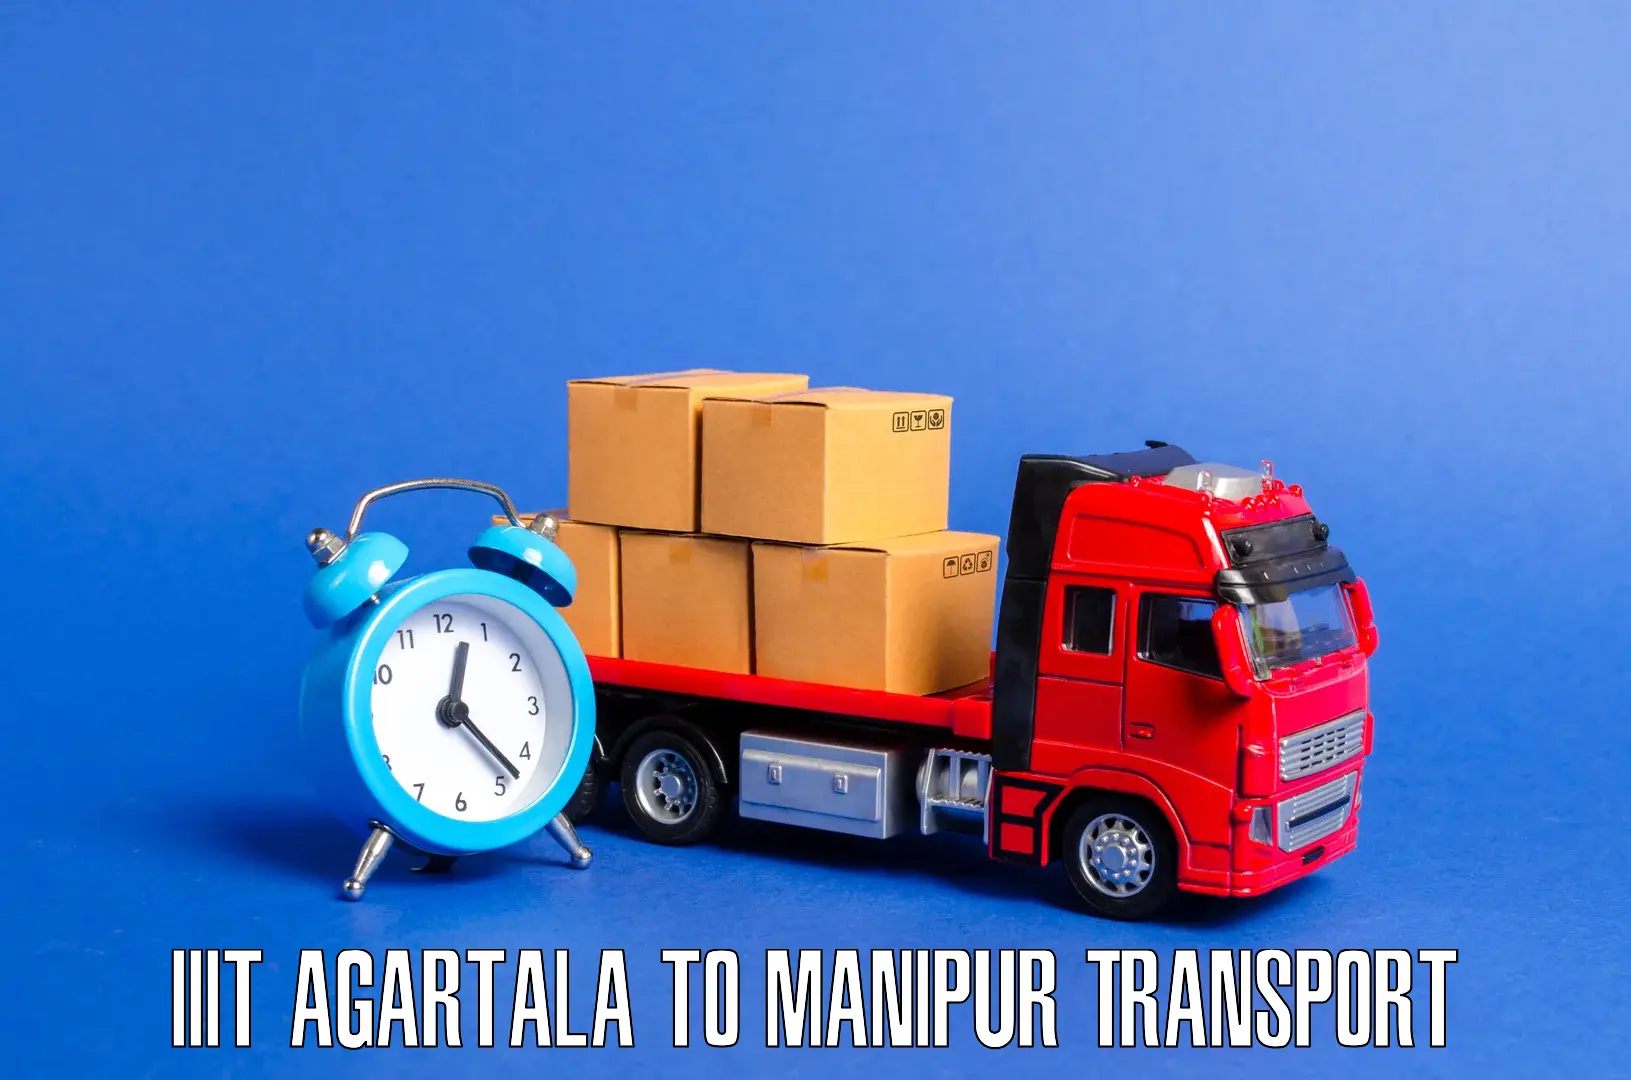 Nearest transport service IIIT Agartala to Ukhrul